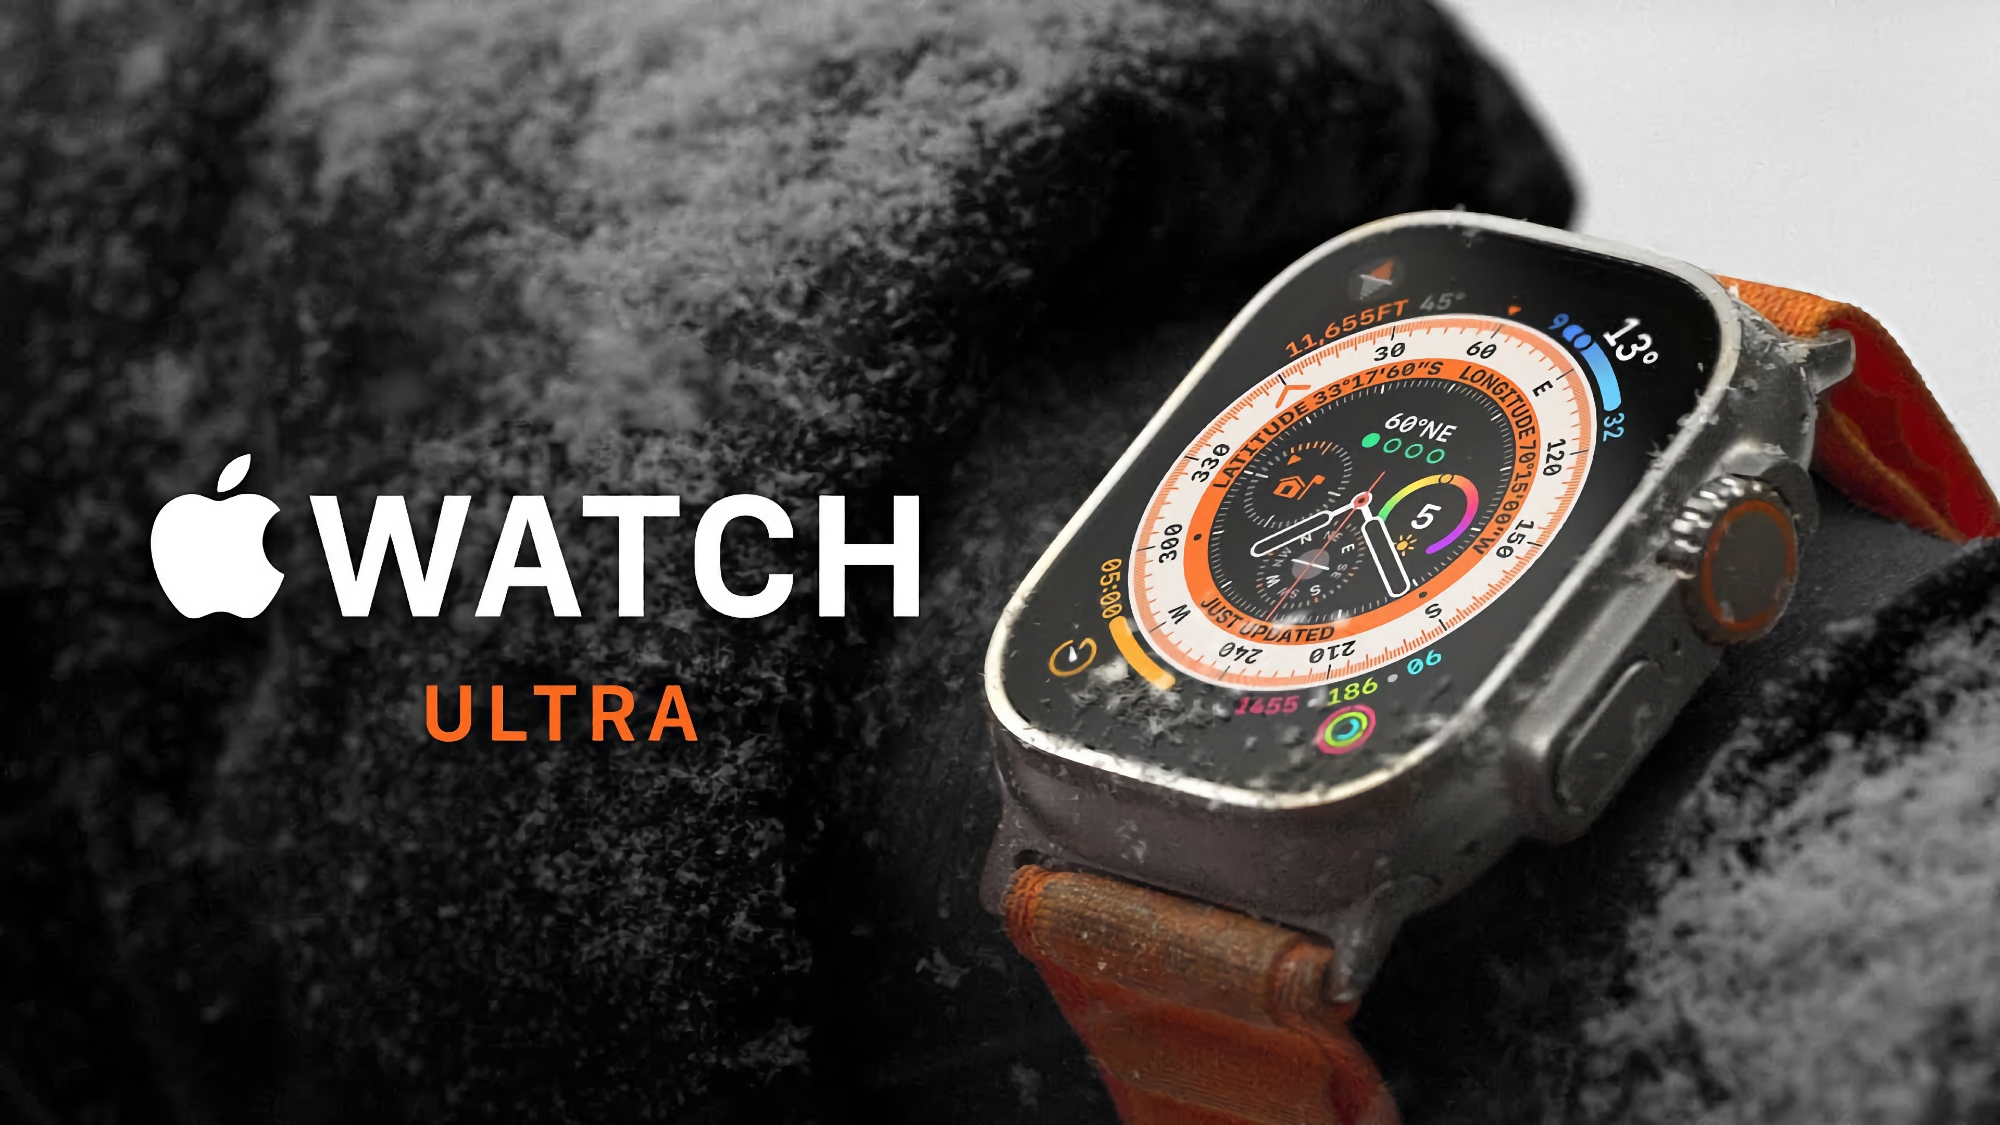 Angebot des Tages: Apple Watch Ultra bei Amazon für 120€ reduziert